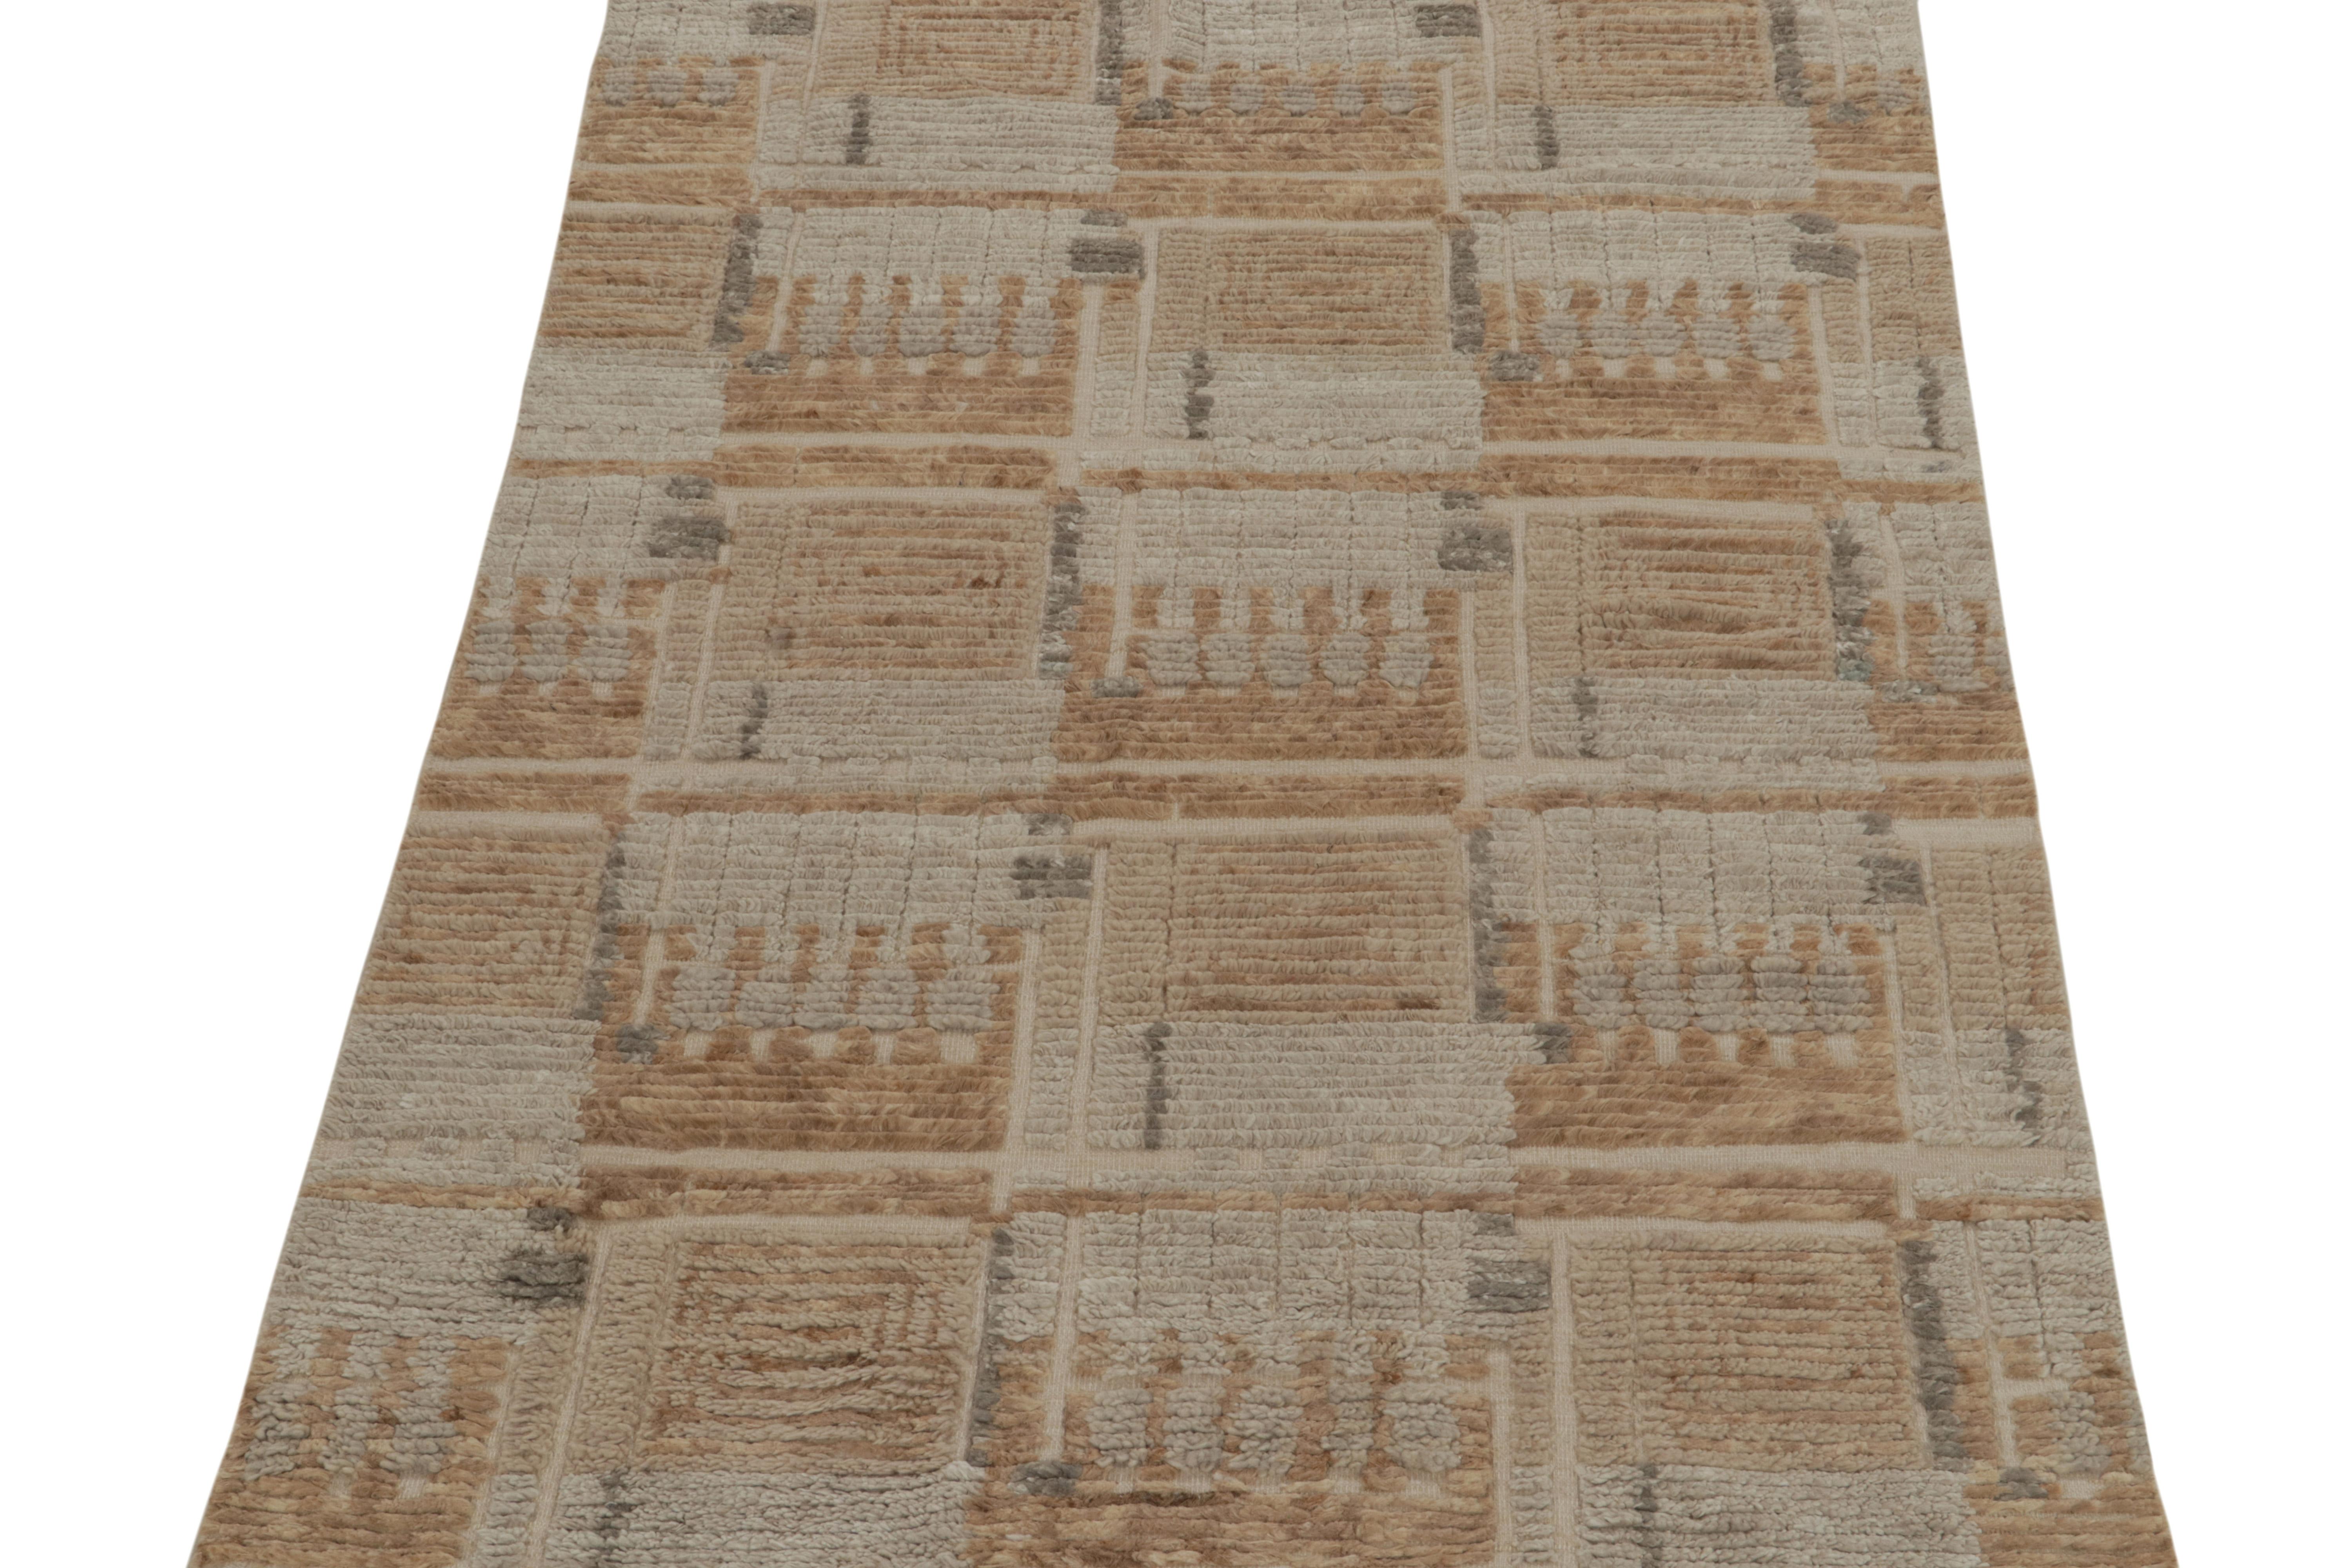 Teppich & Kilims im skandinavischen Stil in Beige-Braun und Grau mit hochgeschlossenen Mustern (Art déco) im Angebot